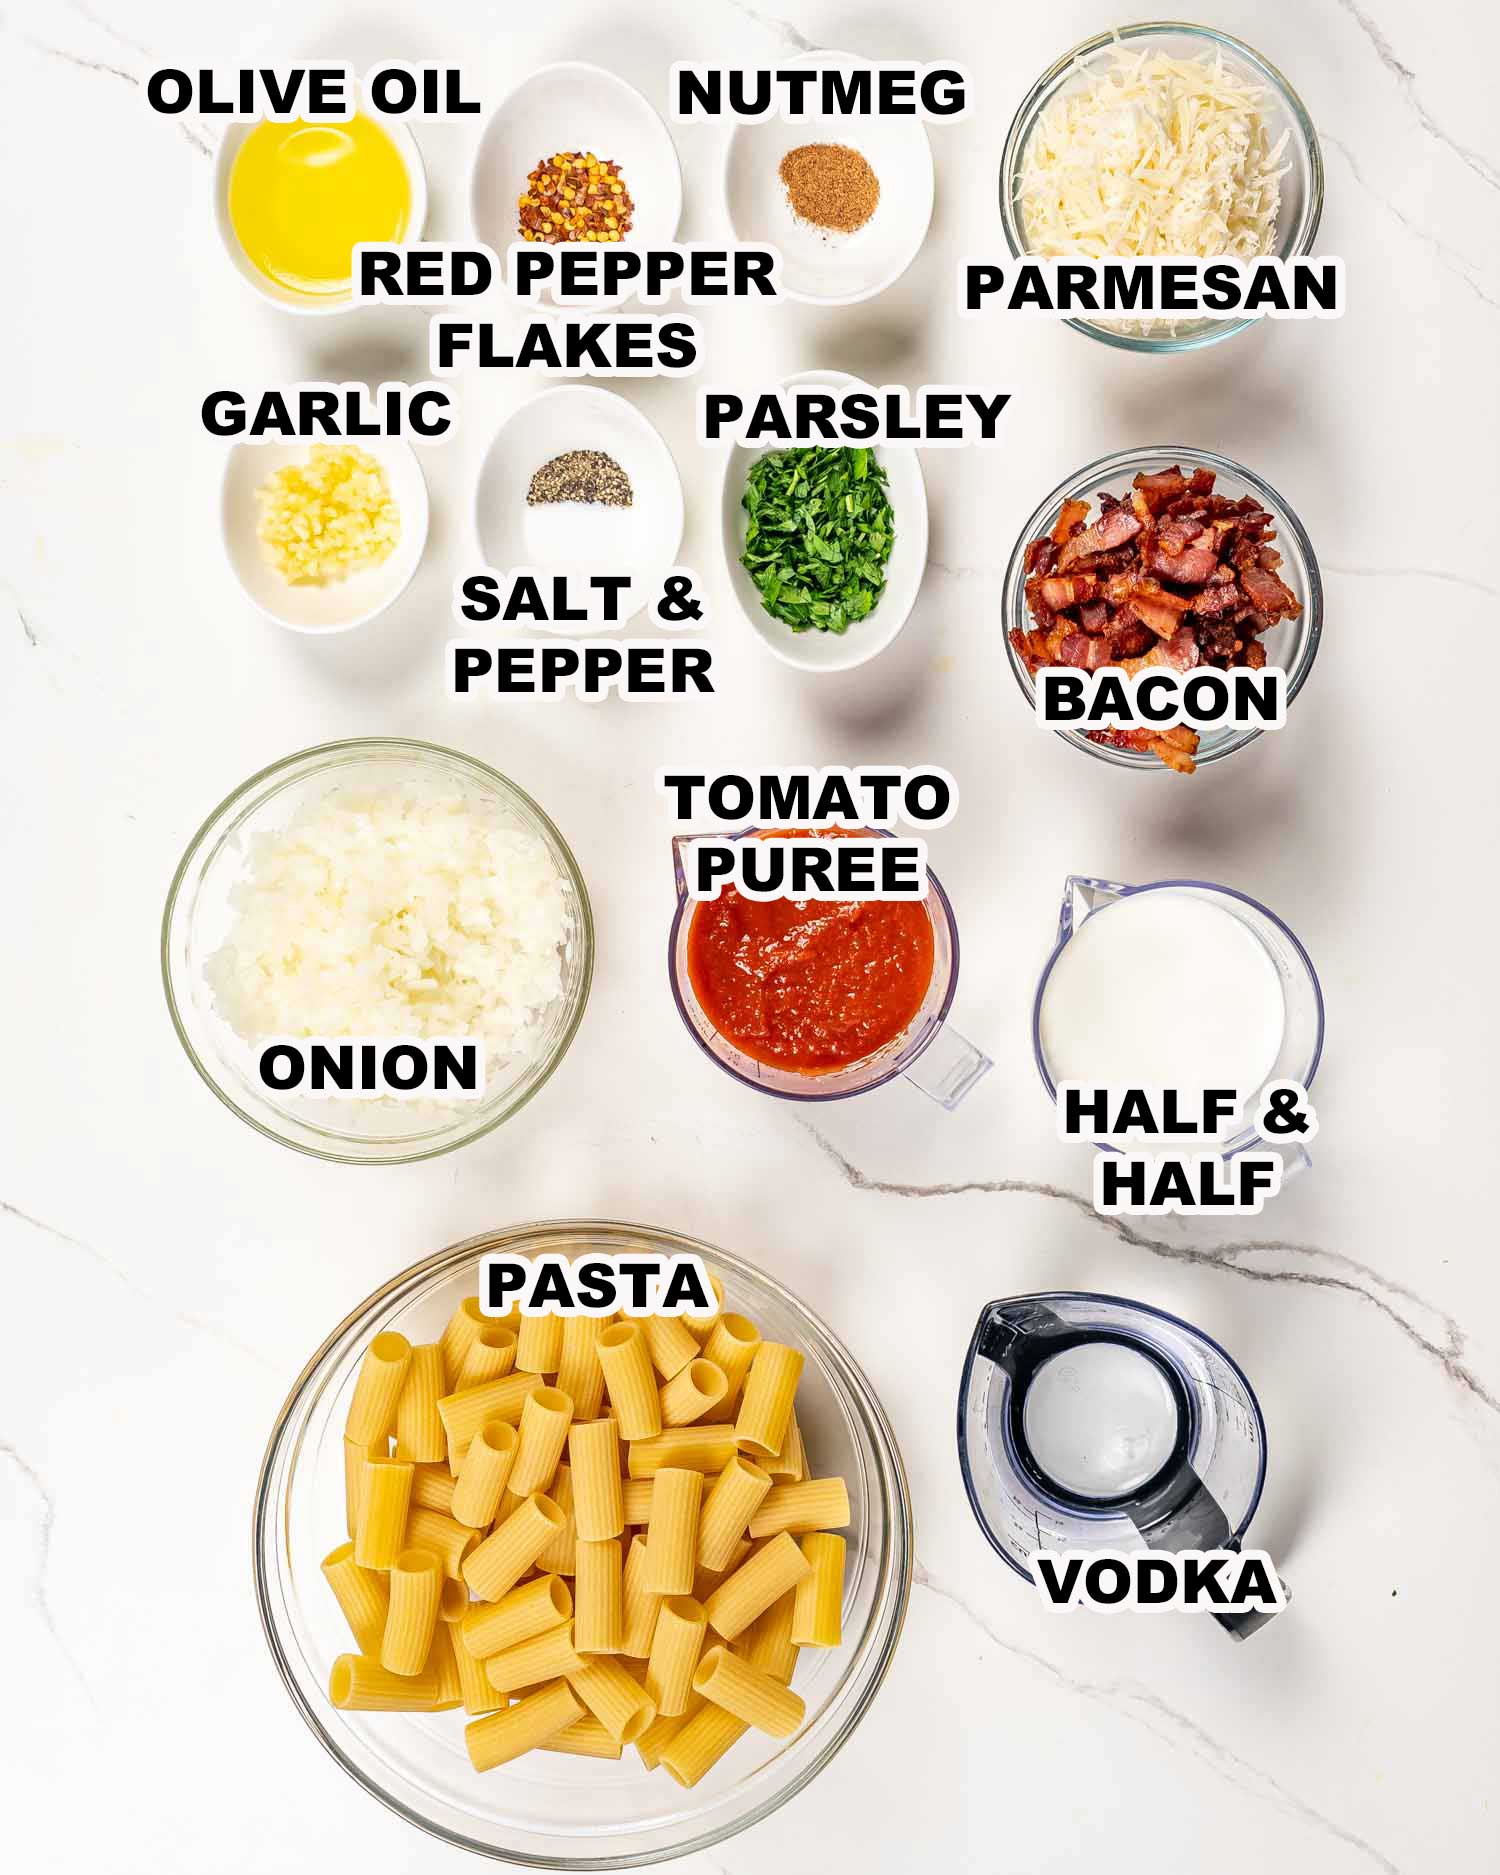 ingredients needed to make pasta alla vodka.